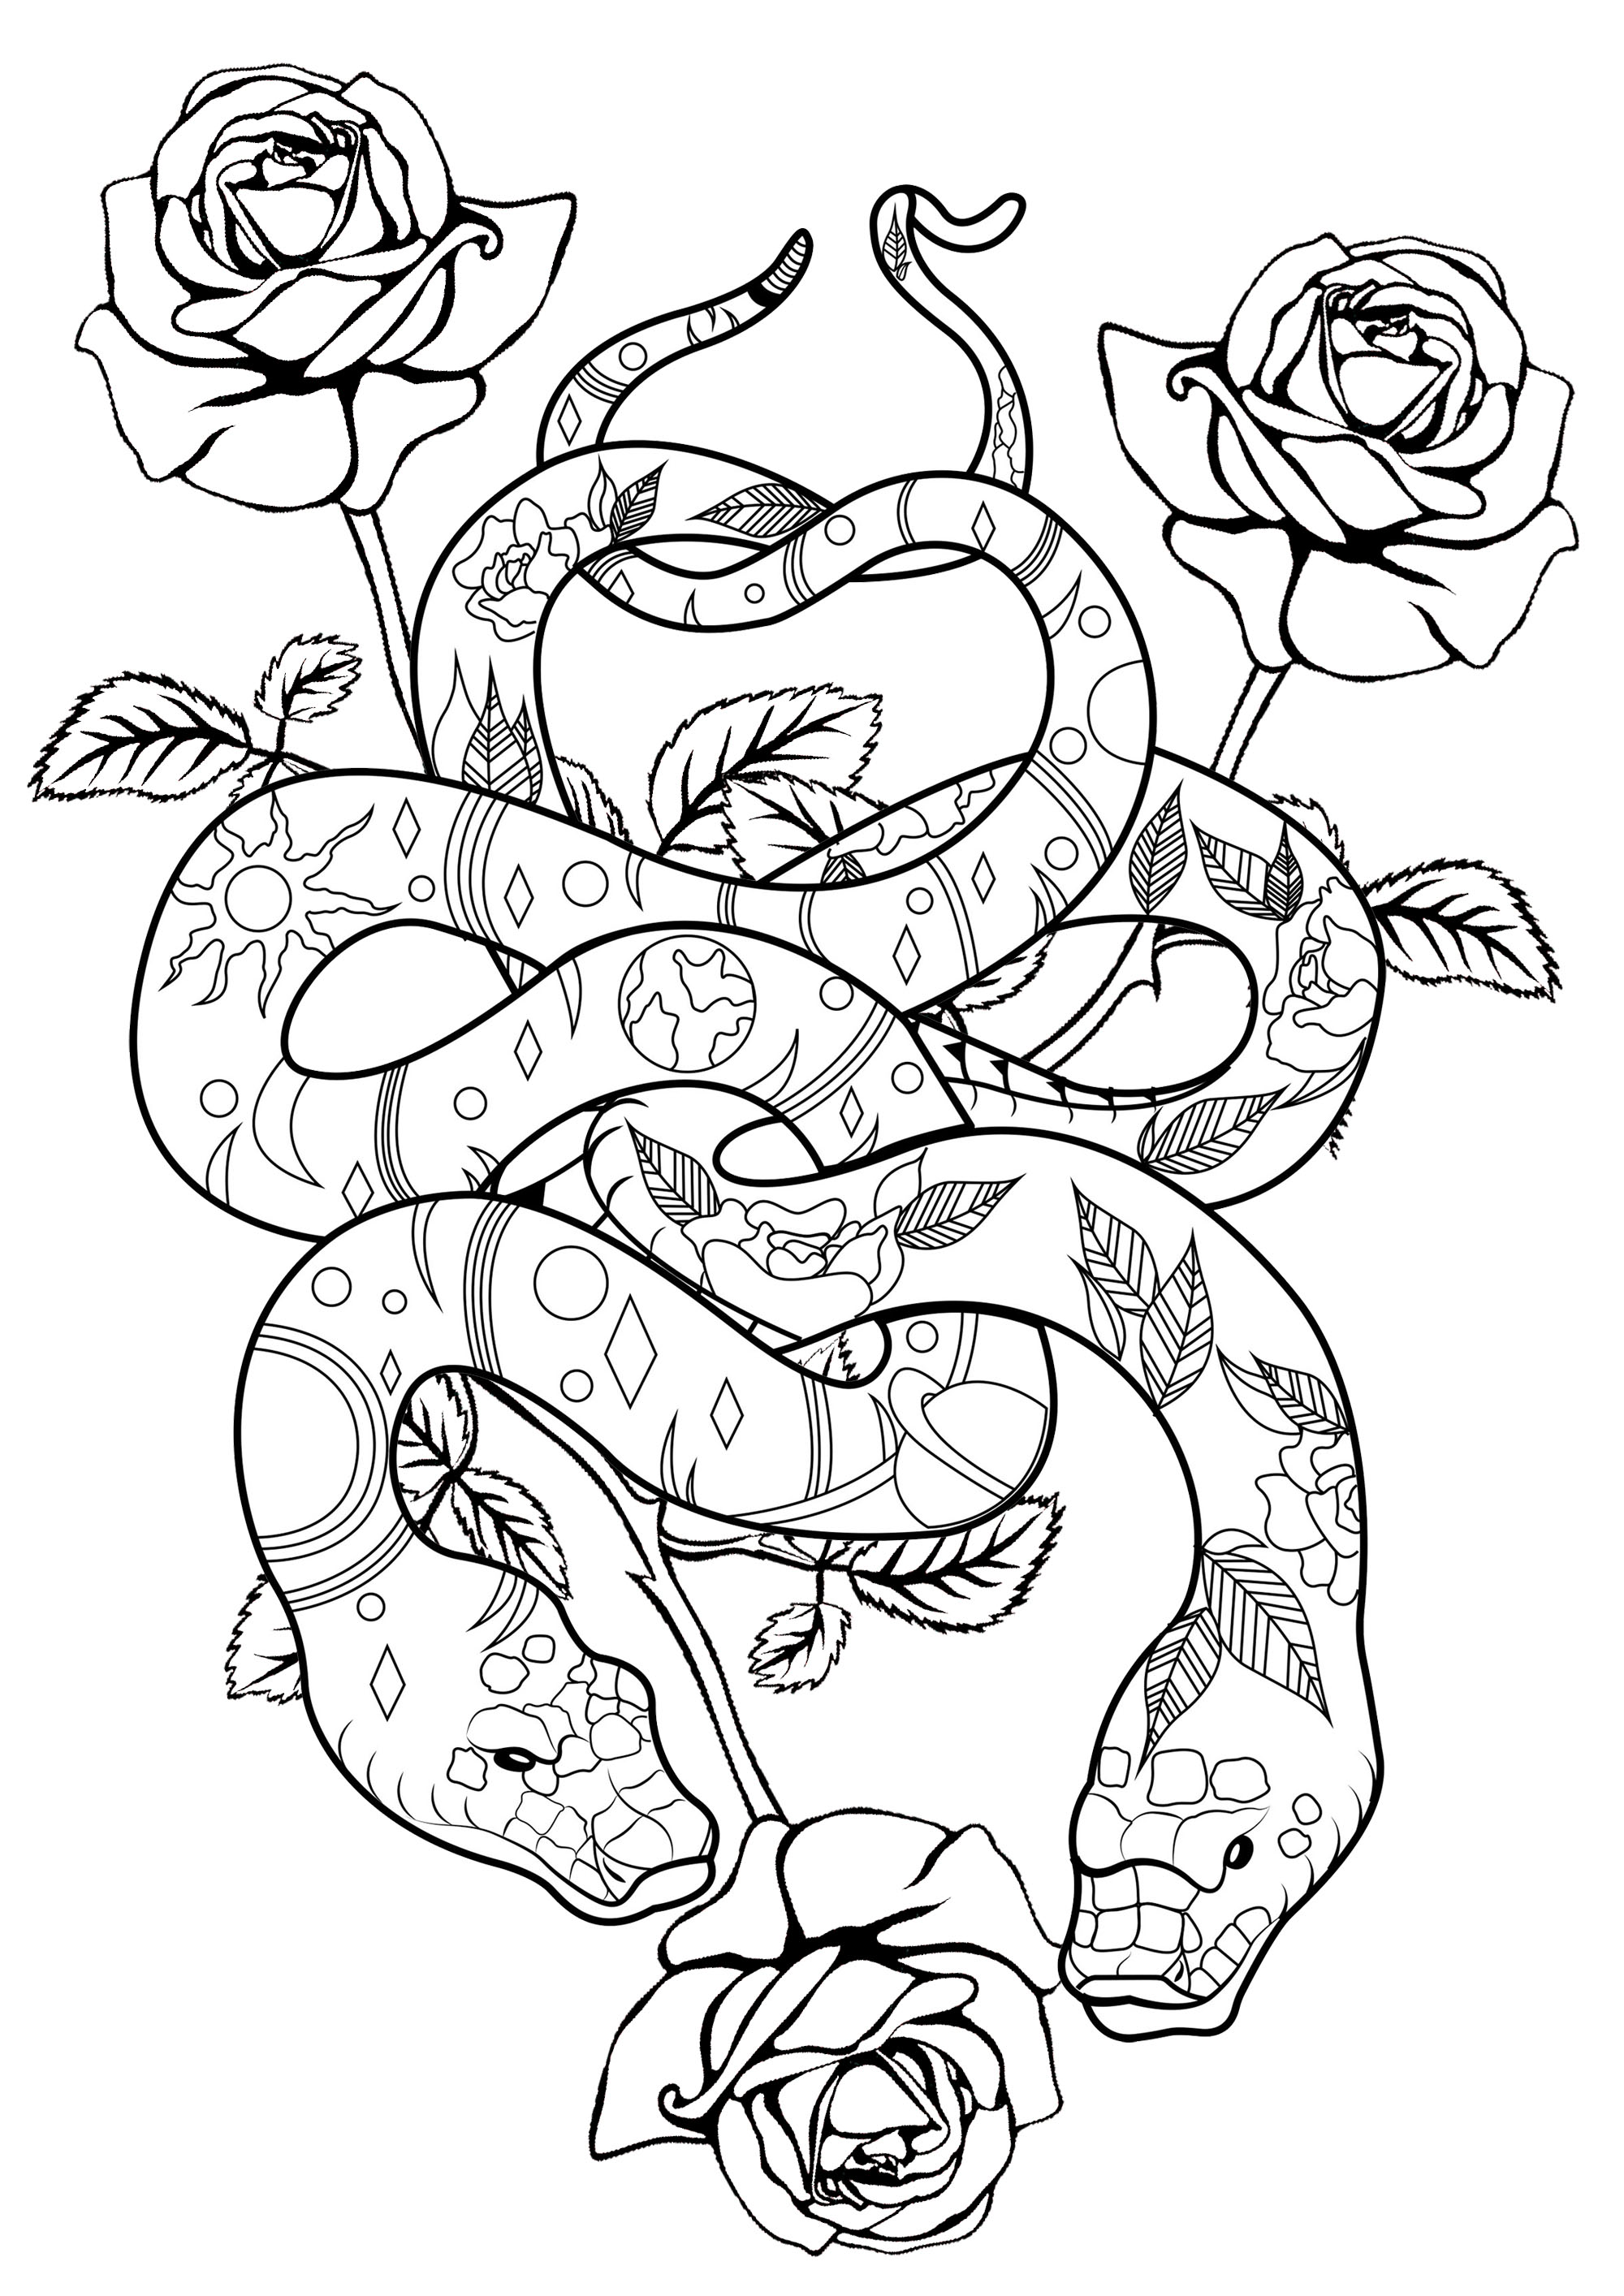 Serpentes e rosas misturadas, para um misto de doçura e perigo ...